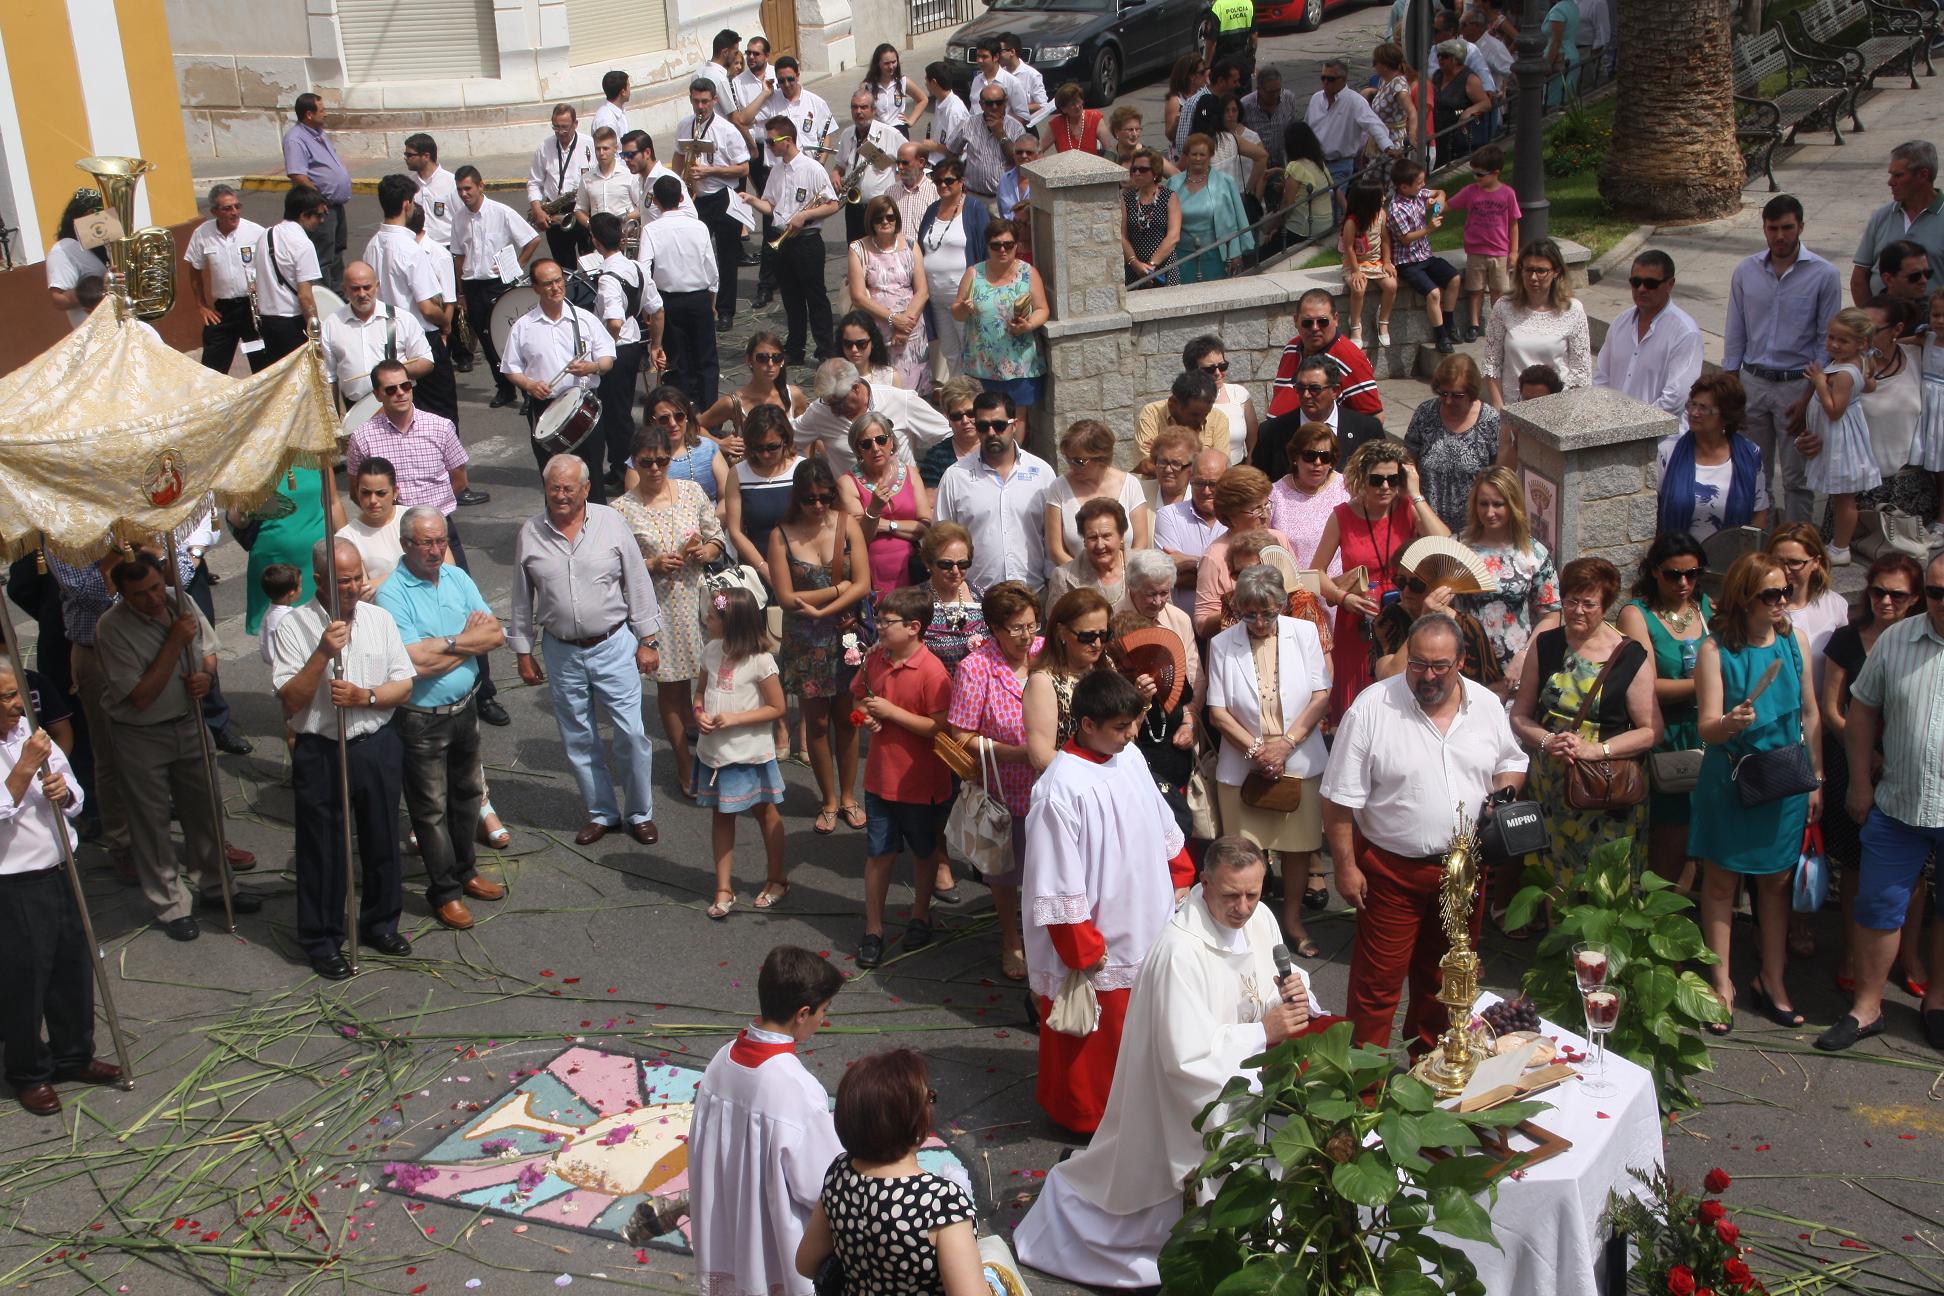 Las calles de Puebla se engalanan para celebrar el Corpus Christi